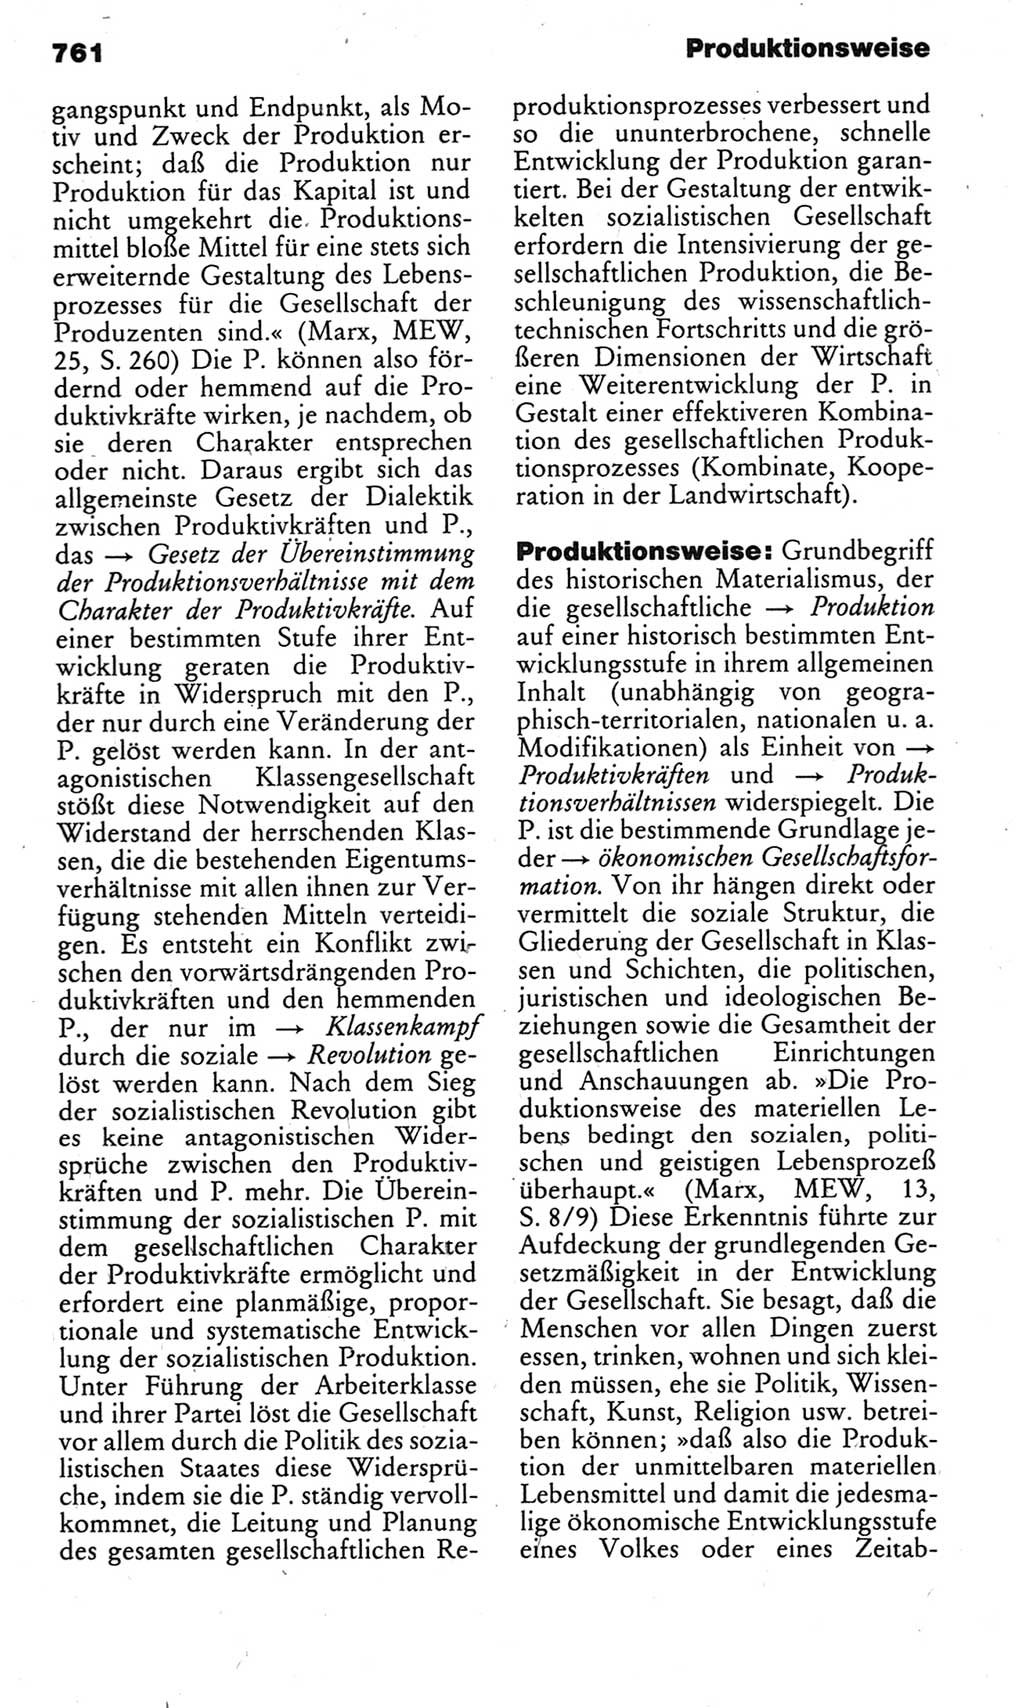 Kleines politisches Wörterbuch [Deutsche Demokratische Republik (DDR)] 1983, Seite 761 (Kl. pol. Wb. DDR 1983, S. 761)